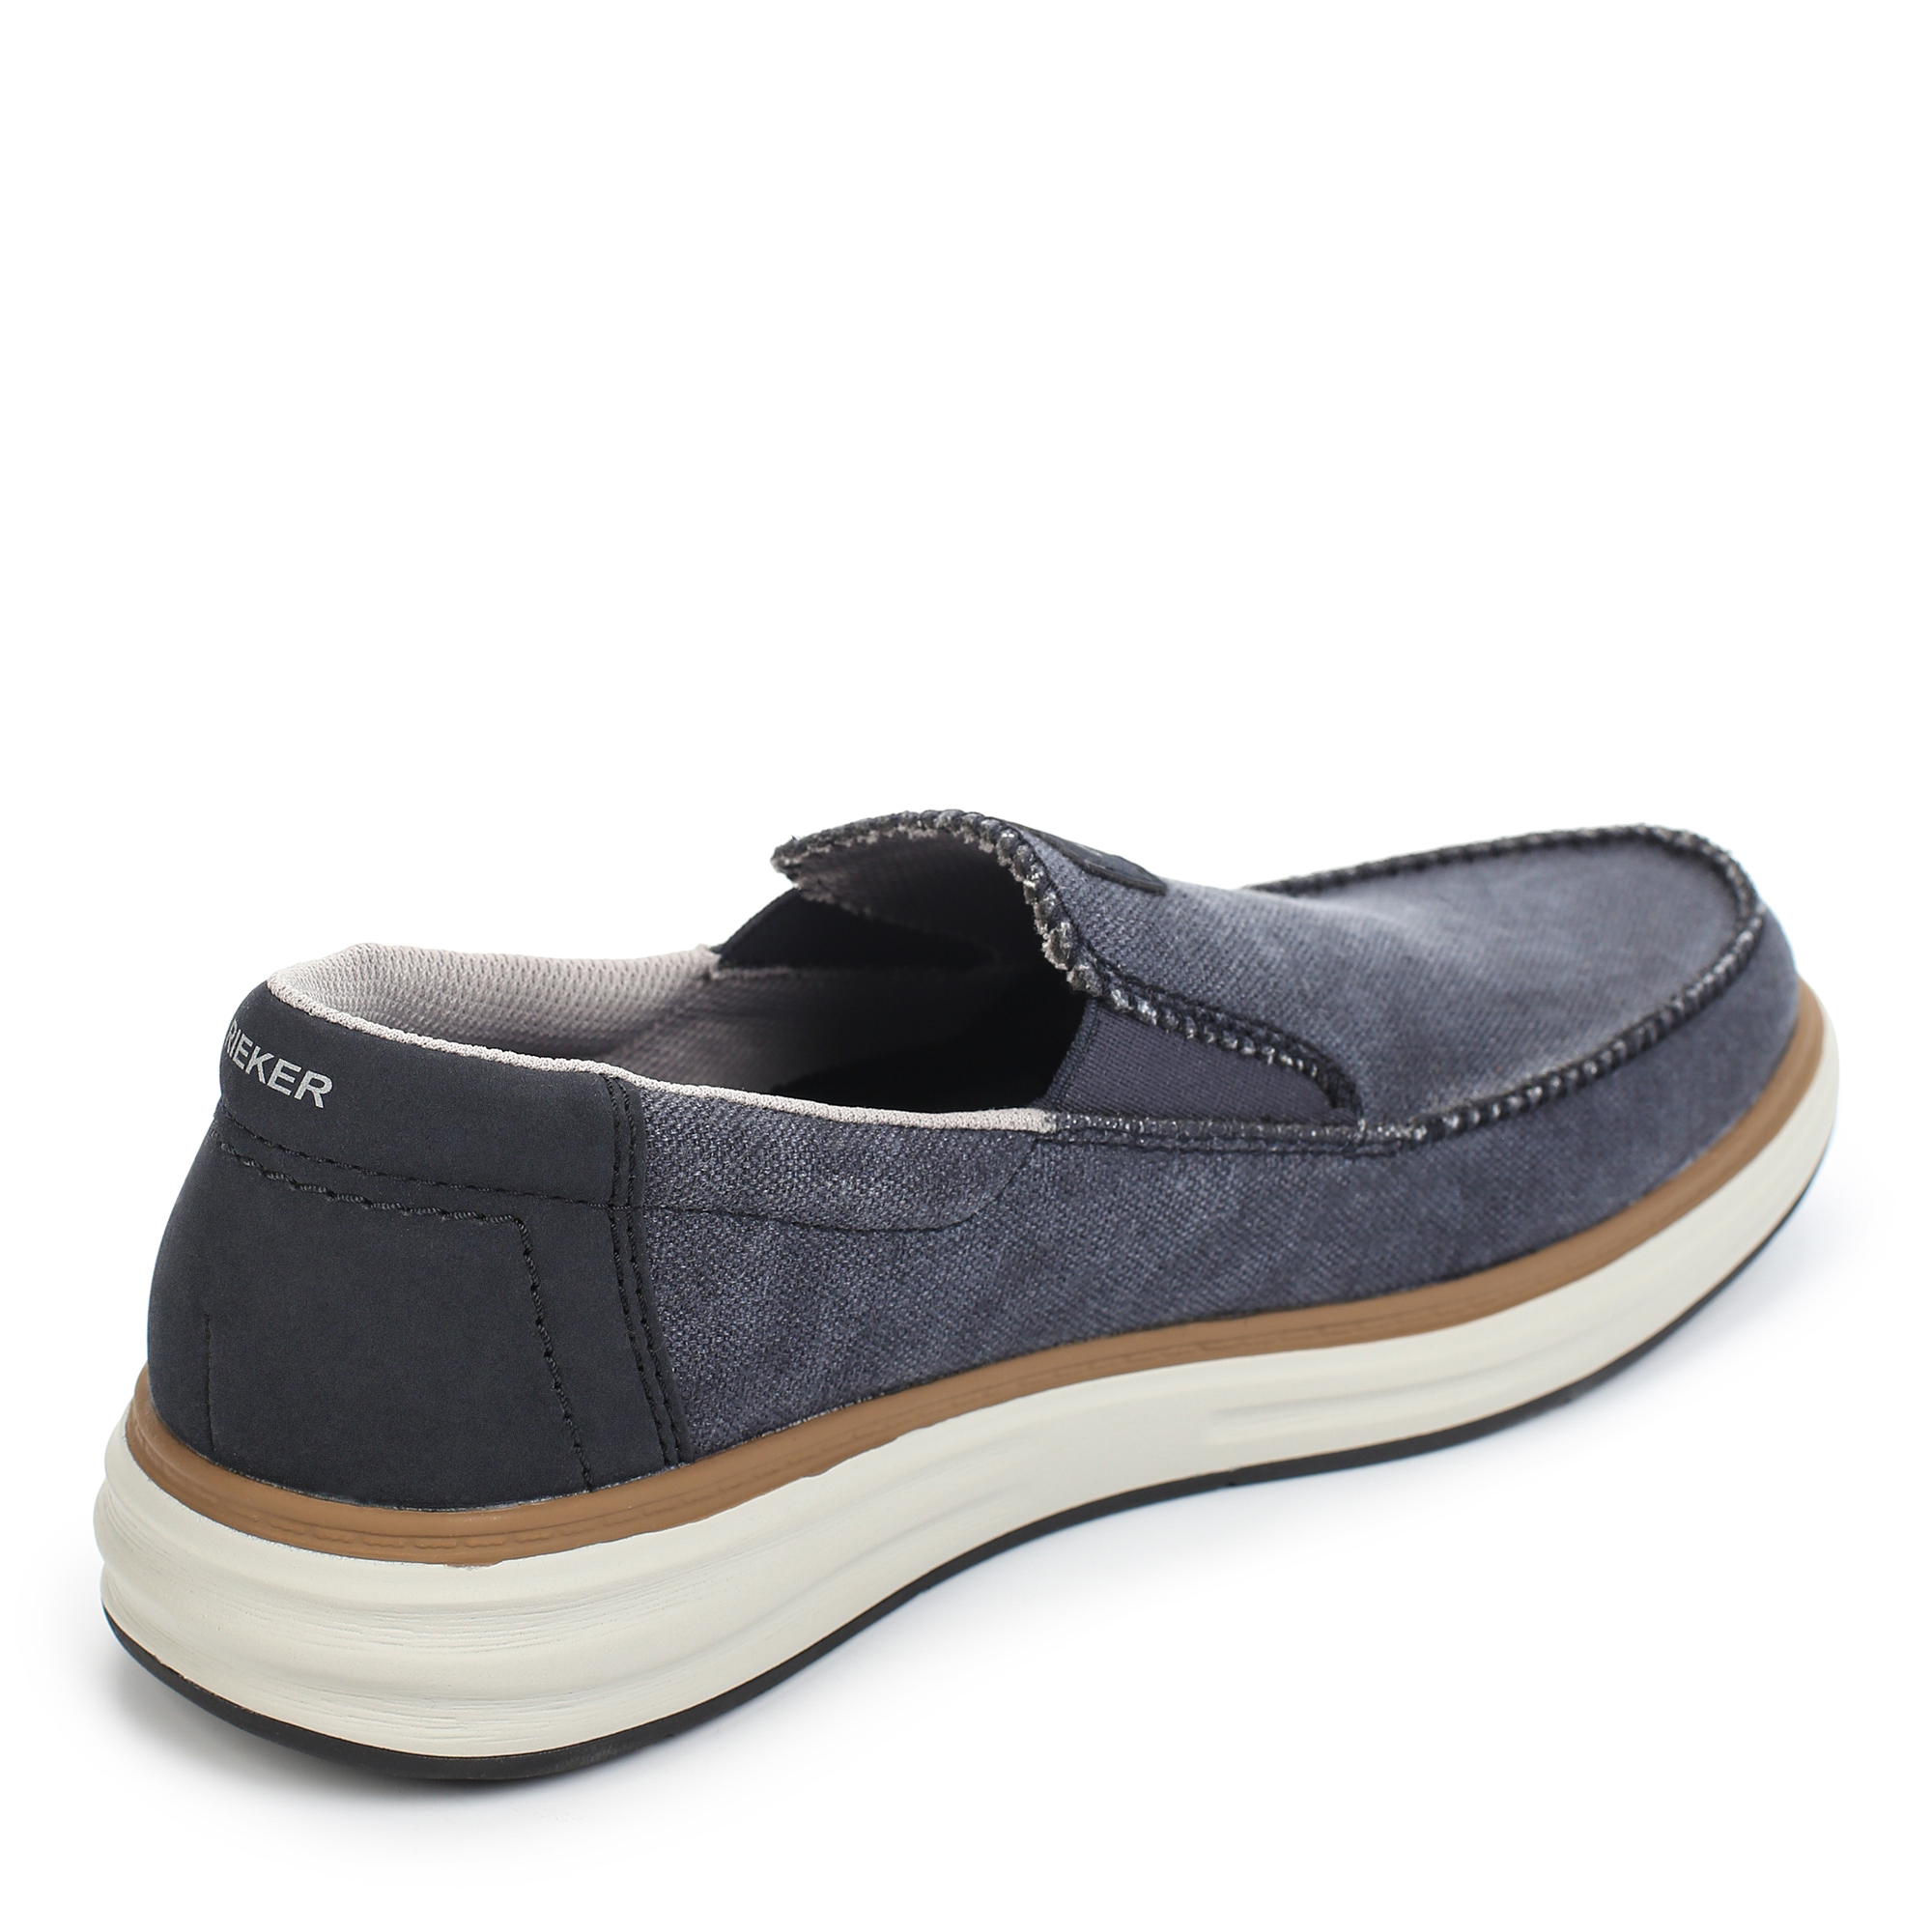 Туфли/полуботинки Rieker B6350-14, цвет синий, размер 41 - фото 3